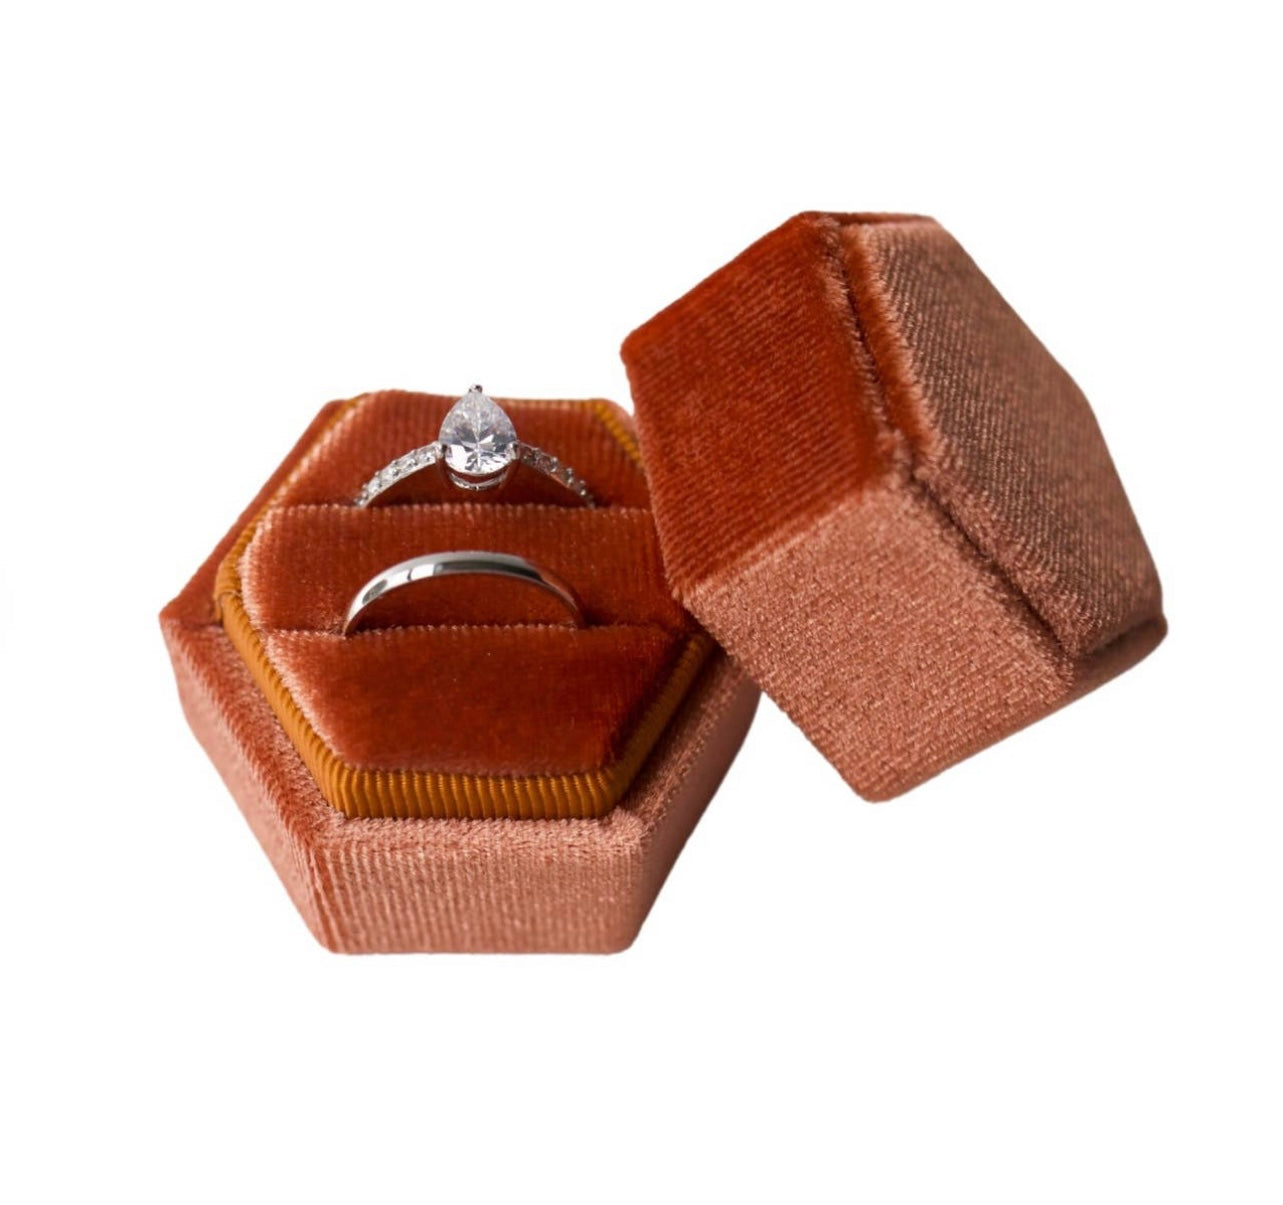 Burnt Orange Hexagon Velvet Ring Box